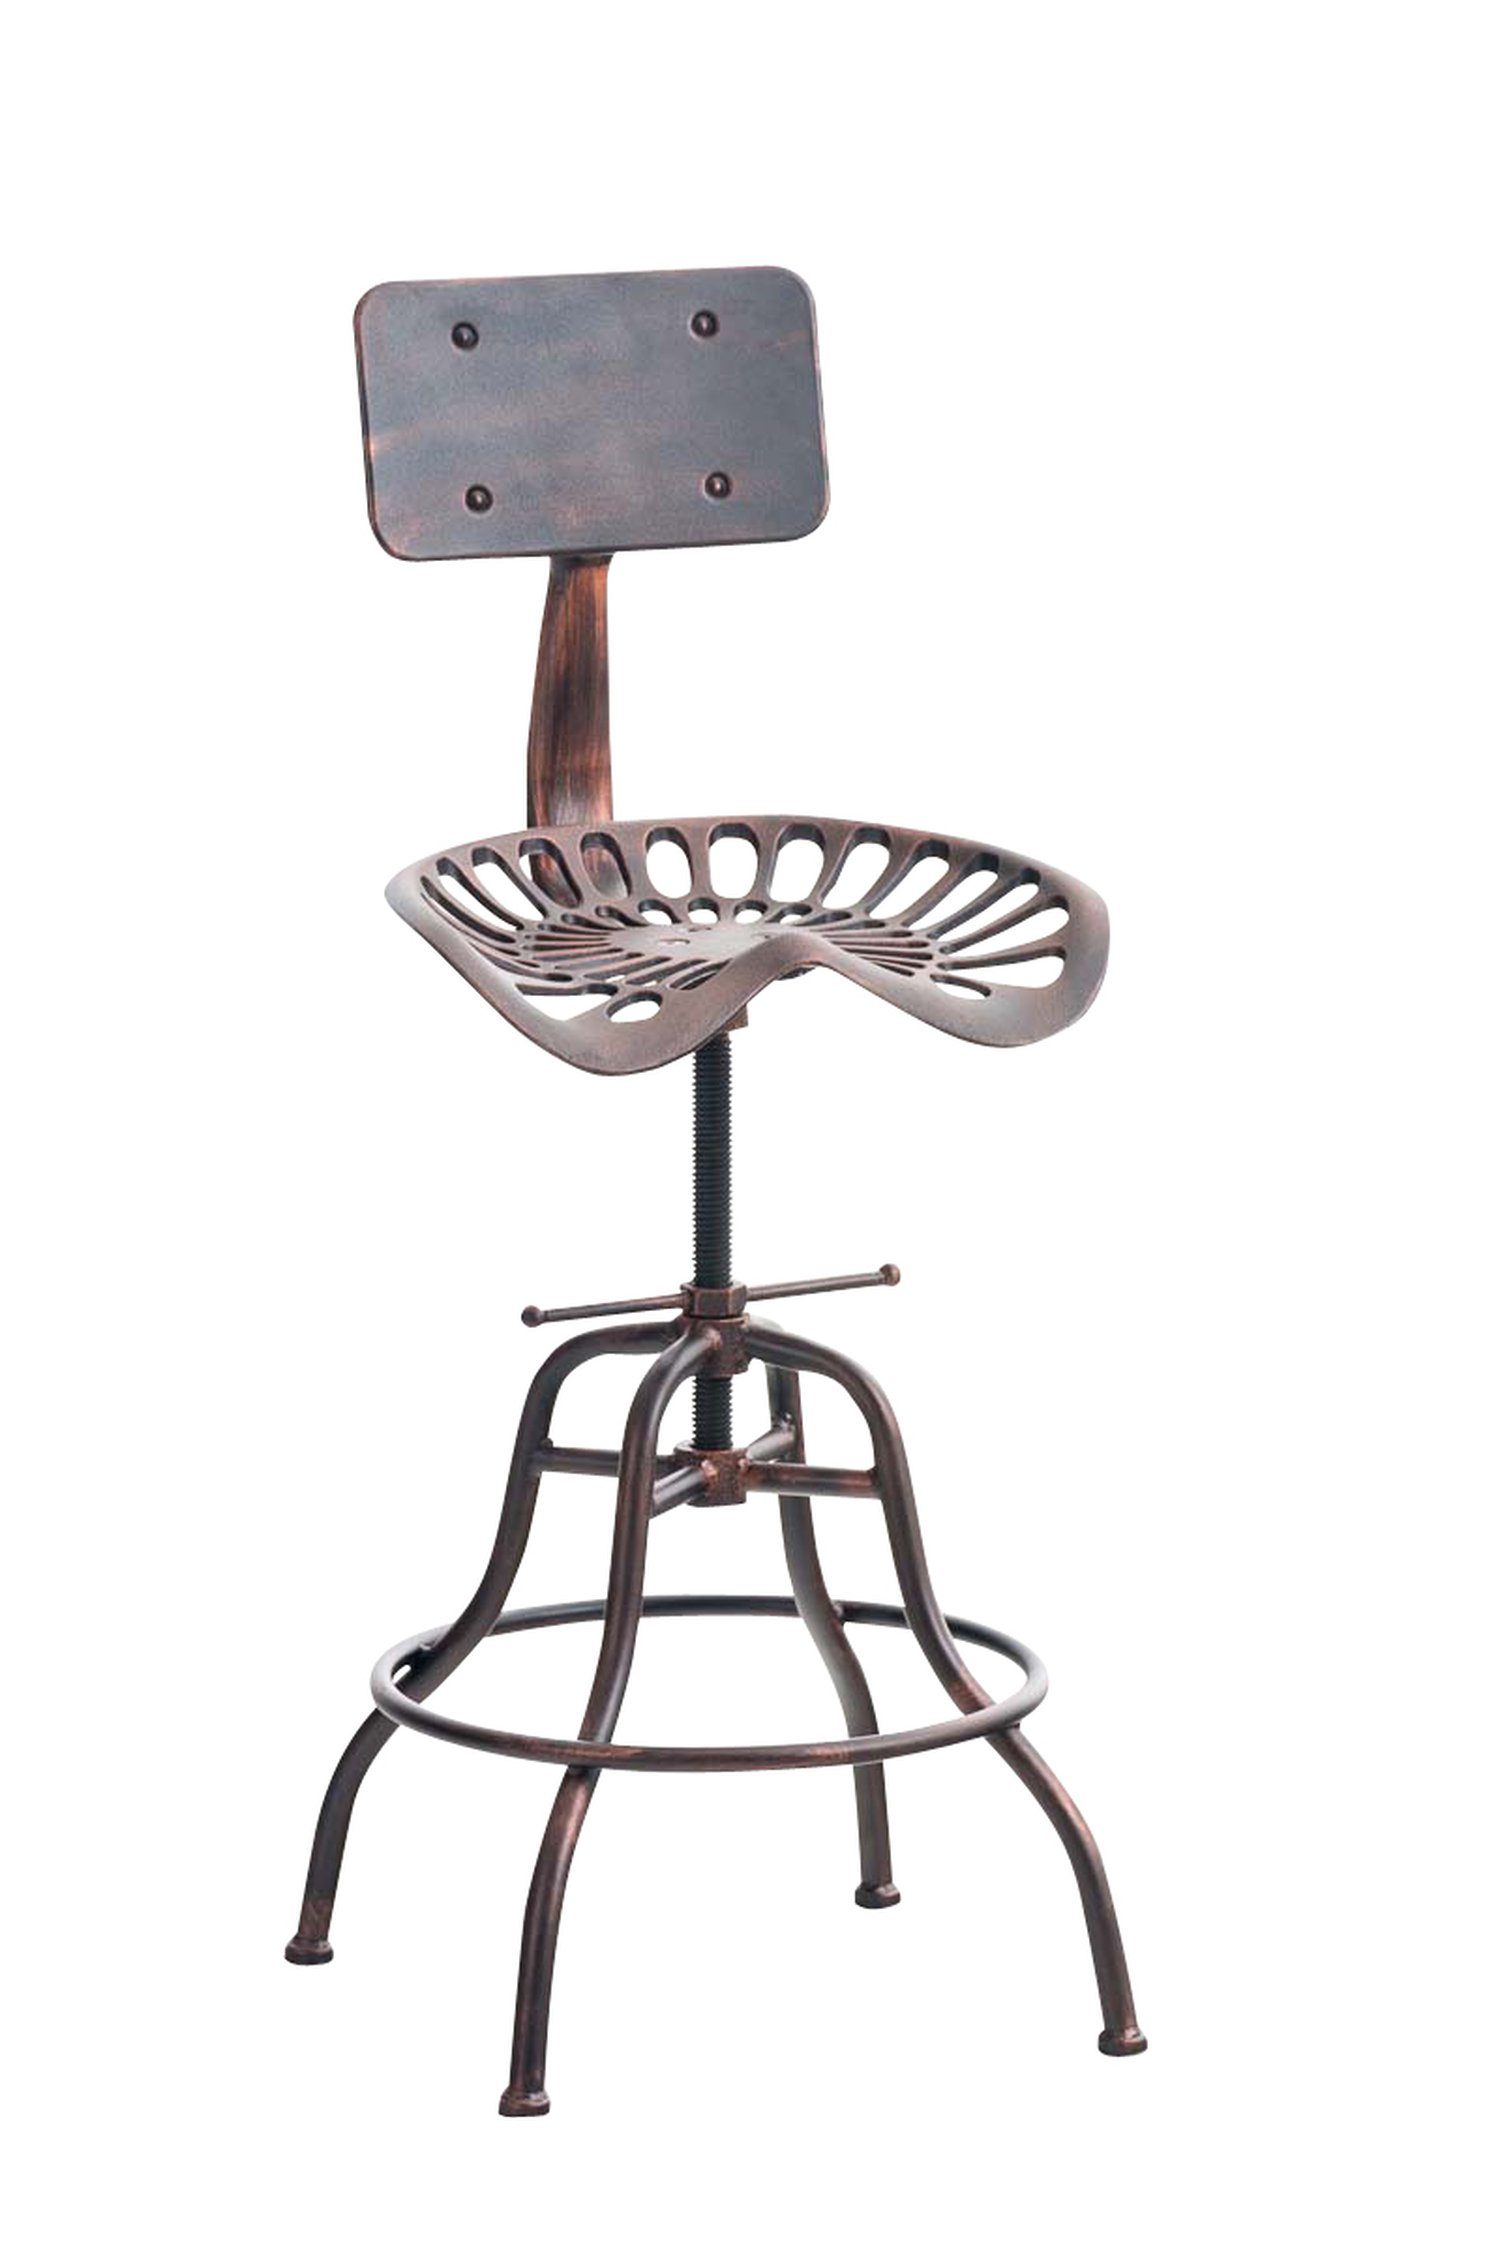 TPFLiving Barhocker Essen (mit angenehmer Fußstütze - Hocker für Theke & Küche), Gestell Metall - Sitzfläche: Metall Bronze